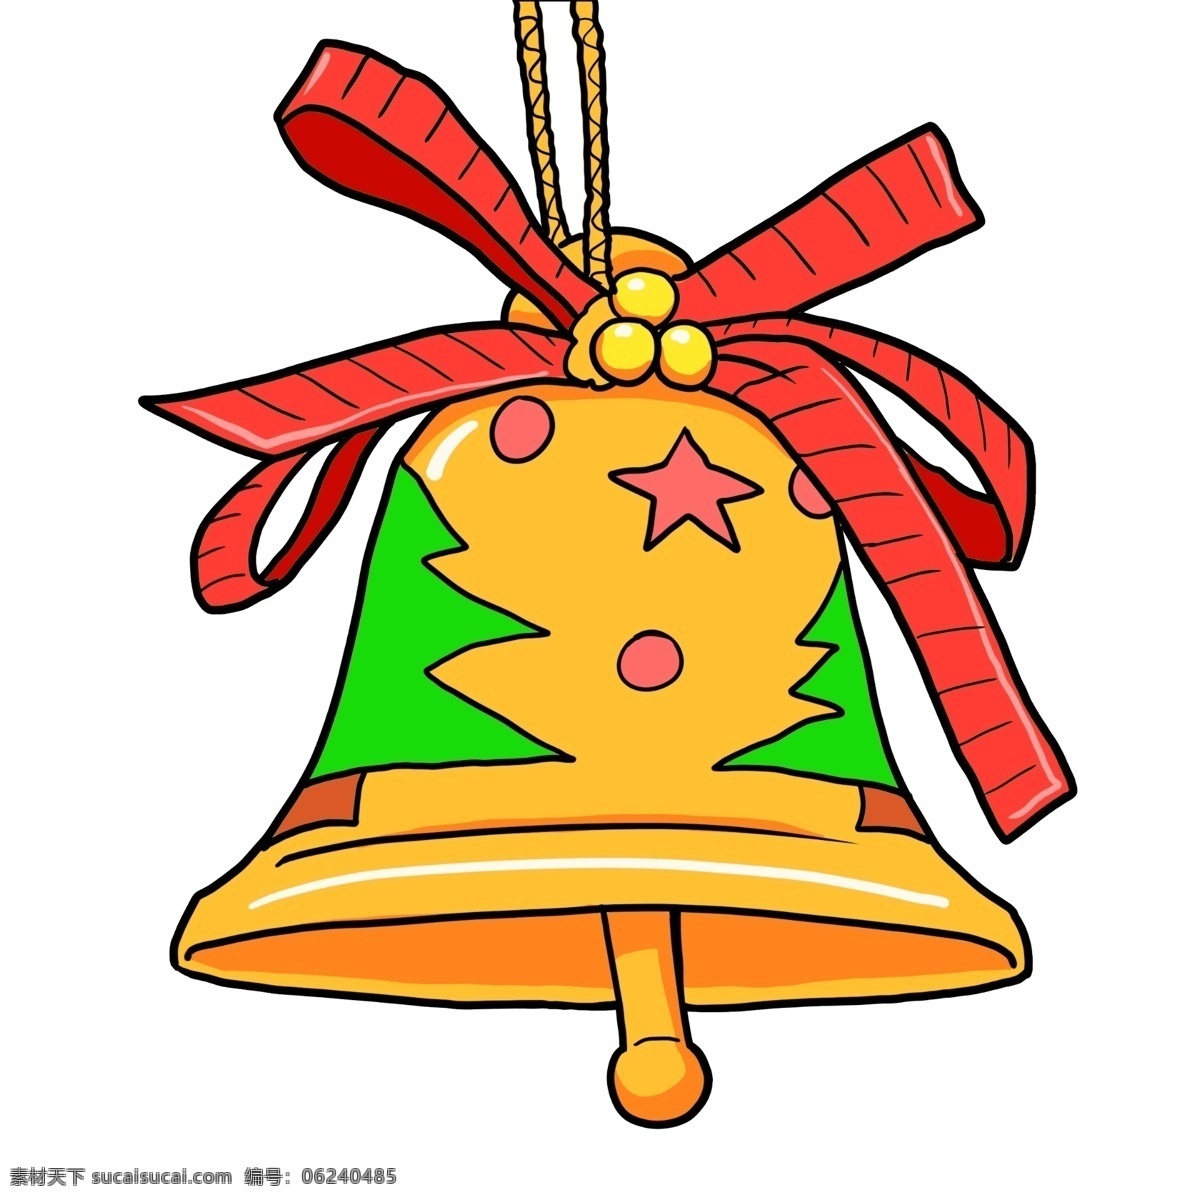 手绘 圣诞节 装饰 铜 铃铛 插画 手绘圣诞铃铛 圣诞节装饰 铜铃铛 圣诞礼物 圣诞装饰 卡通铜铃铛 铃铛插画